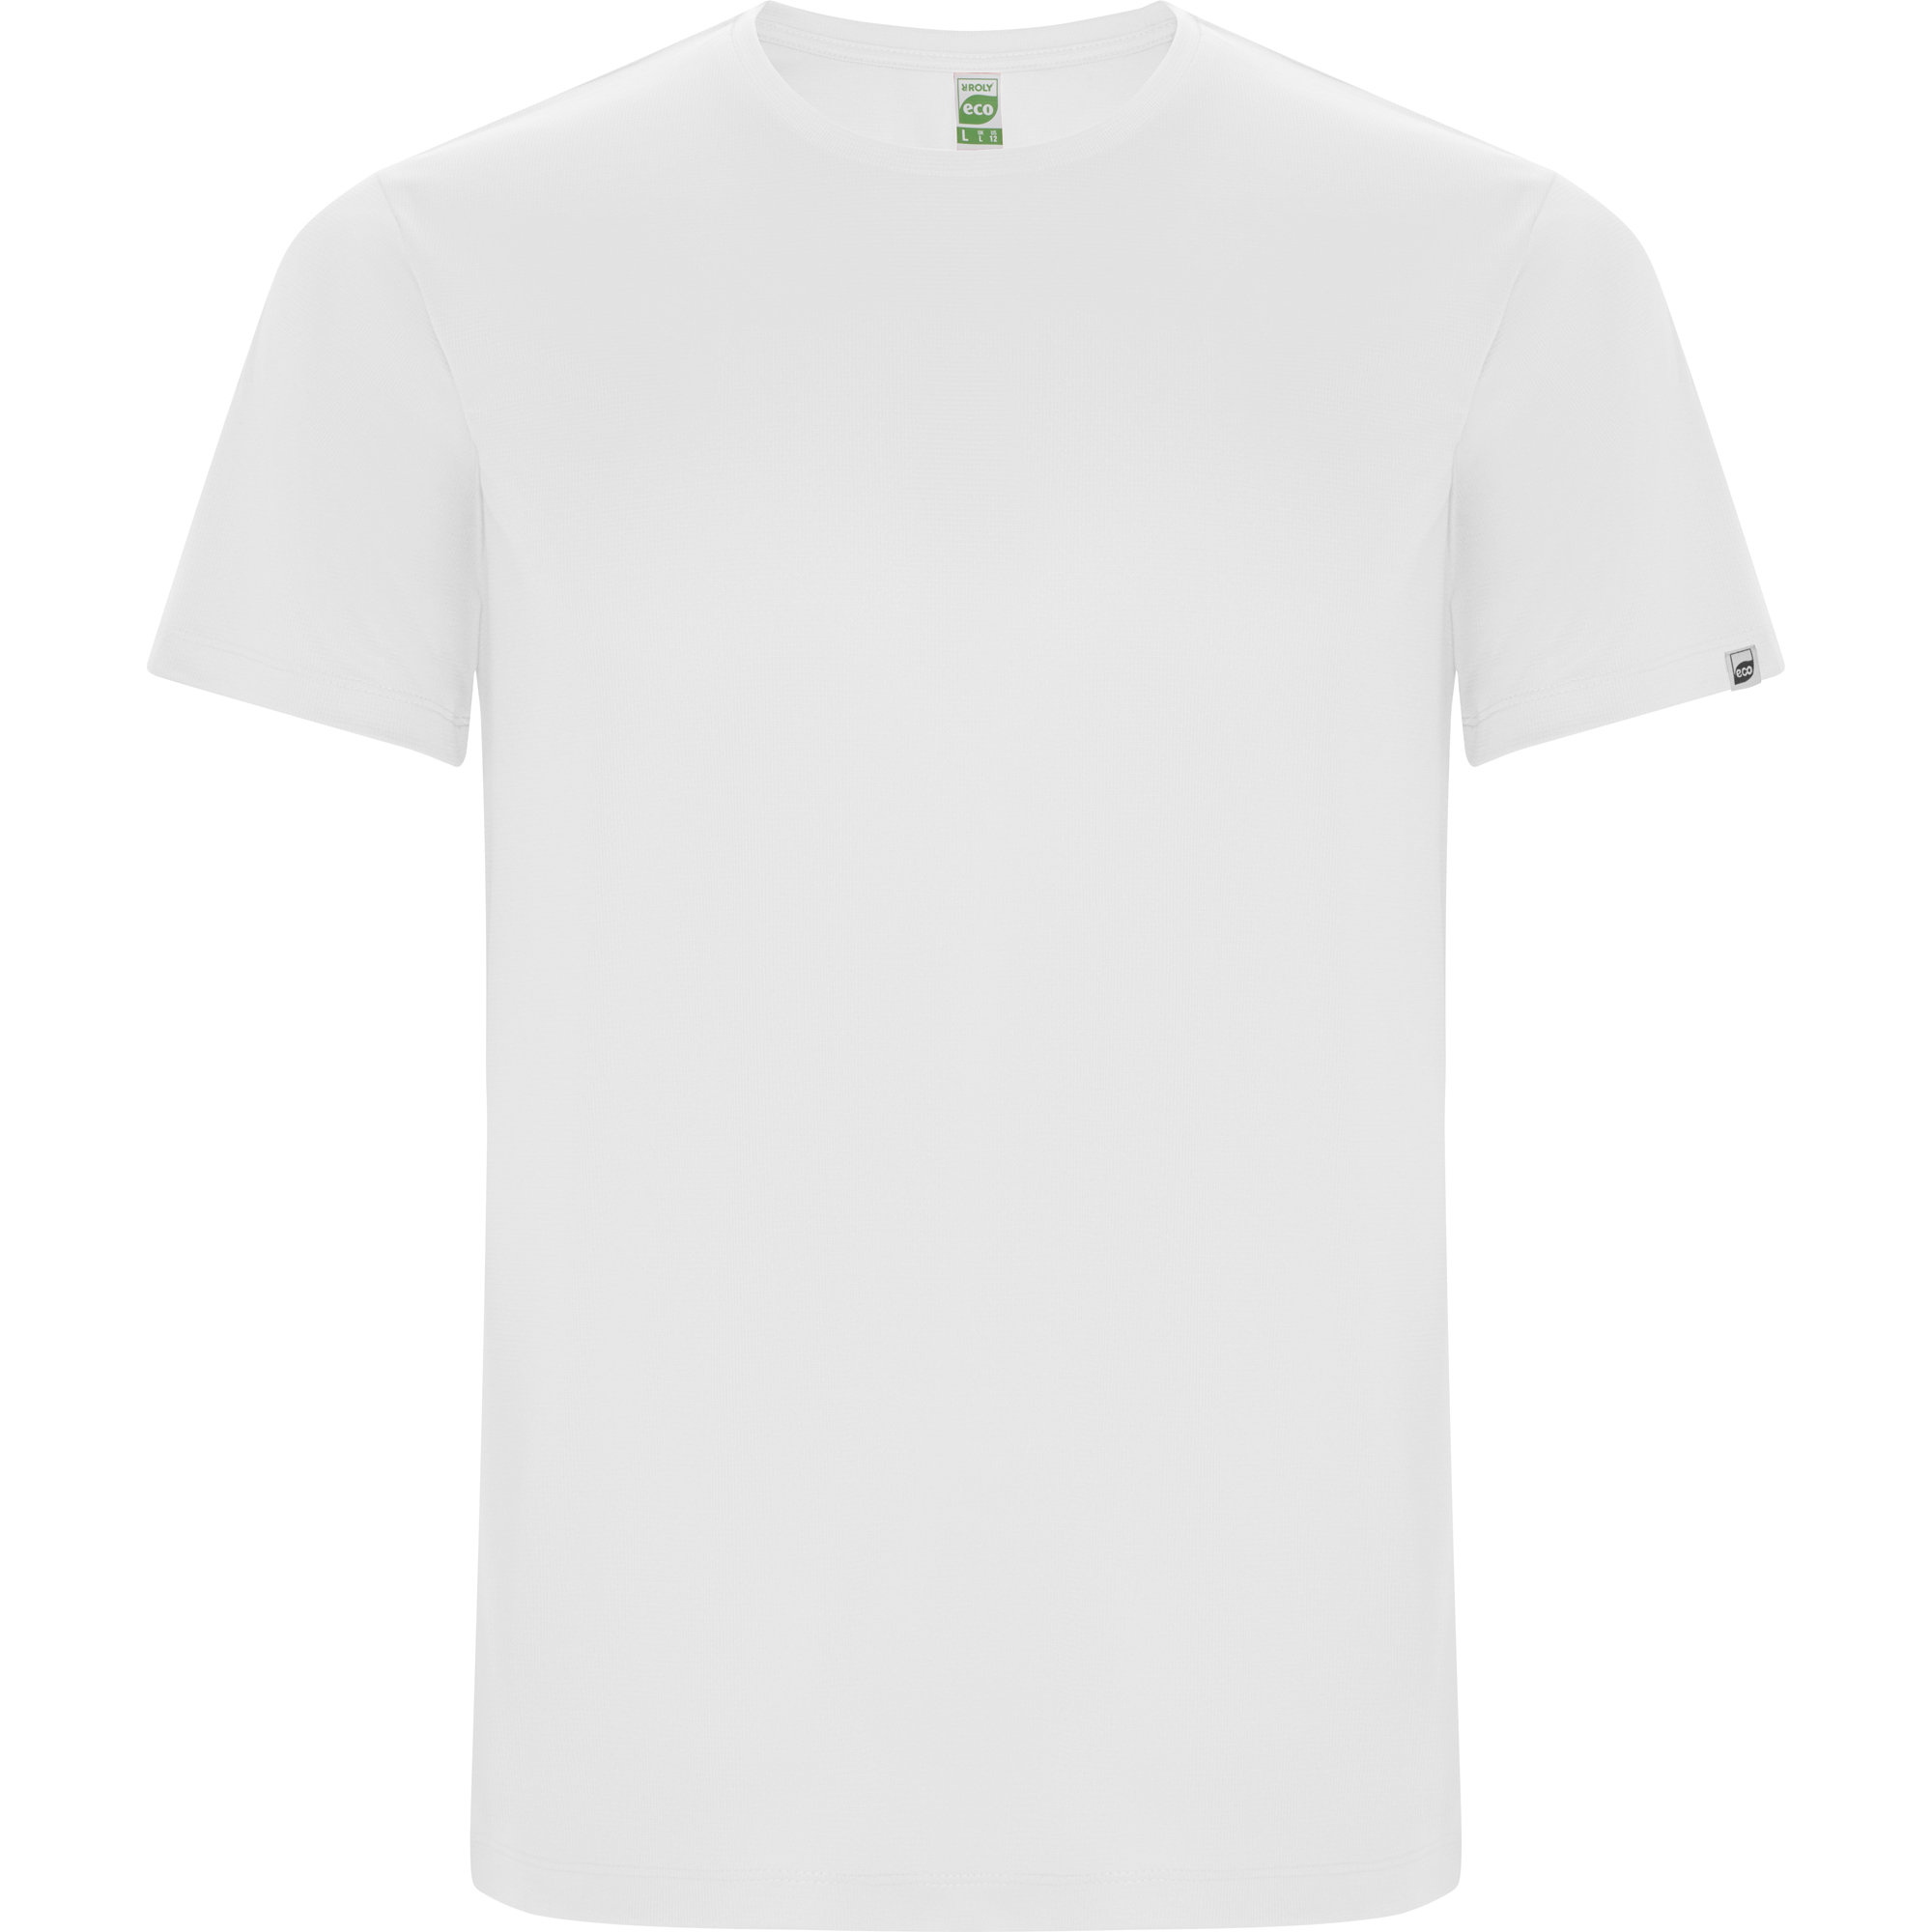 r0427-roly-imola-t-shirt-tecnica-bianco.jpg